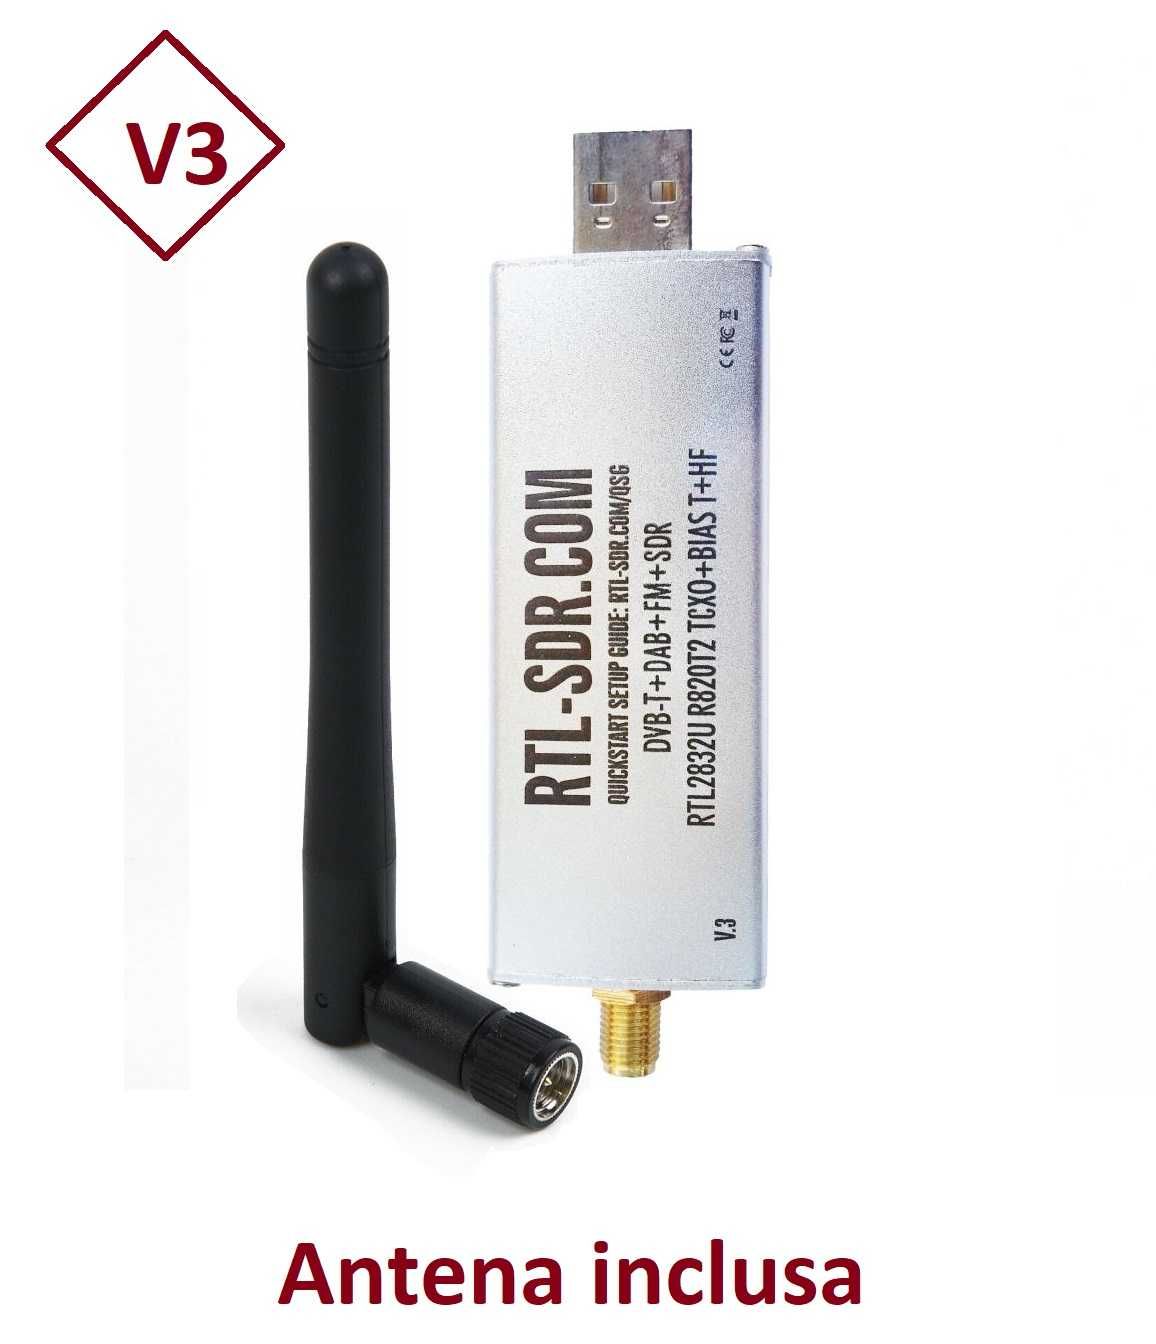 Radio USB scanner SDR 500khz - 24Mhz - 1.766GHz RTL2832U R820T2 Scaner